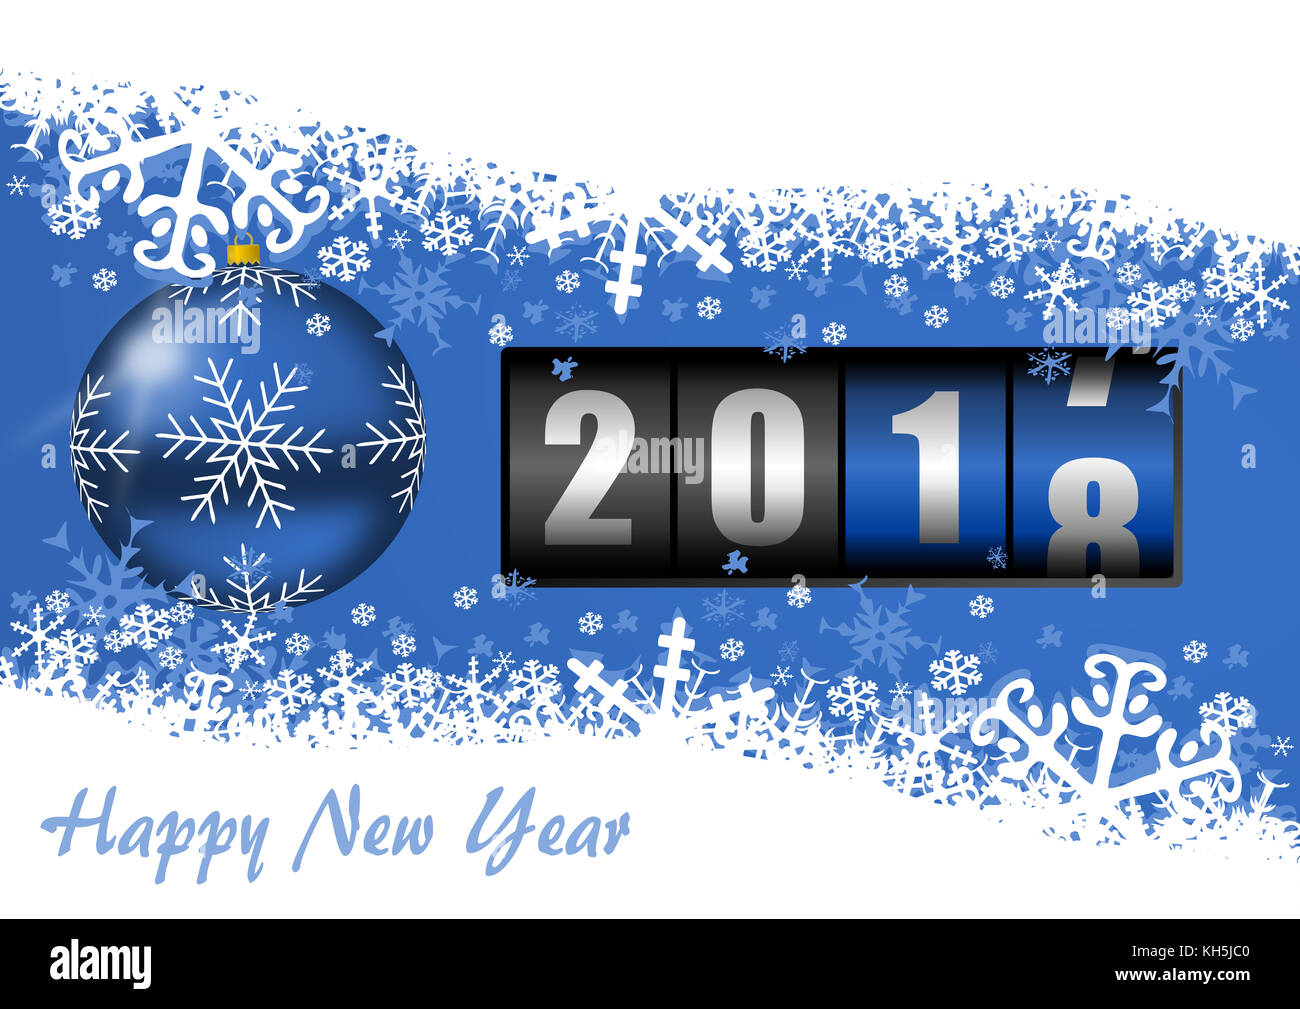 Nochevieja 2018 Tarjeta de felicitación con contador y bolas de Navidad fondo azul con copia vacía espacio para el texto Fotografía de stock Alamy